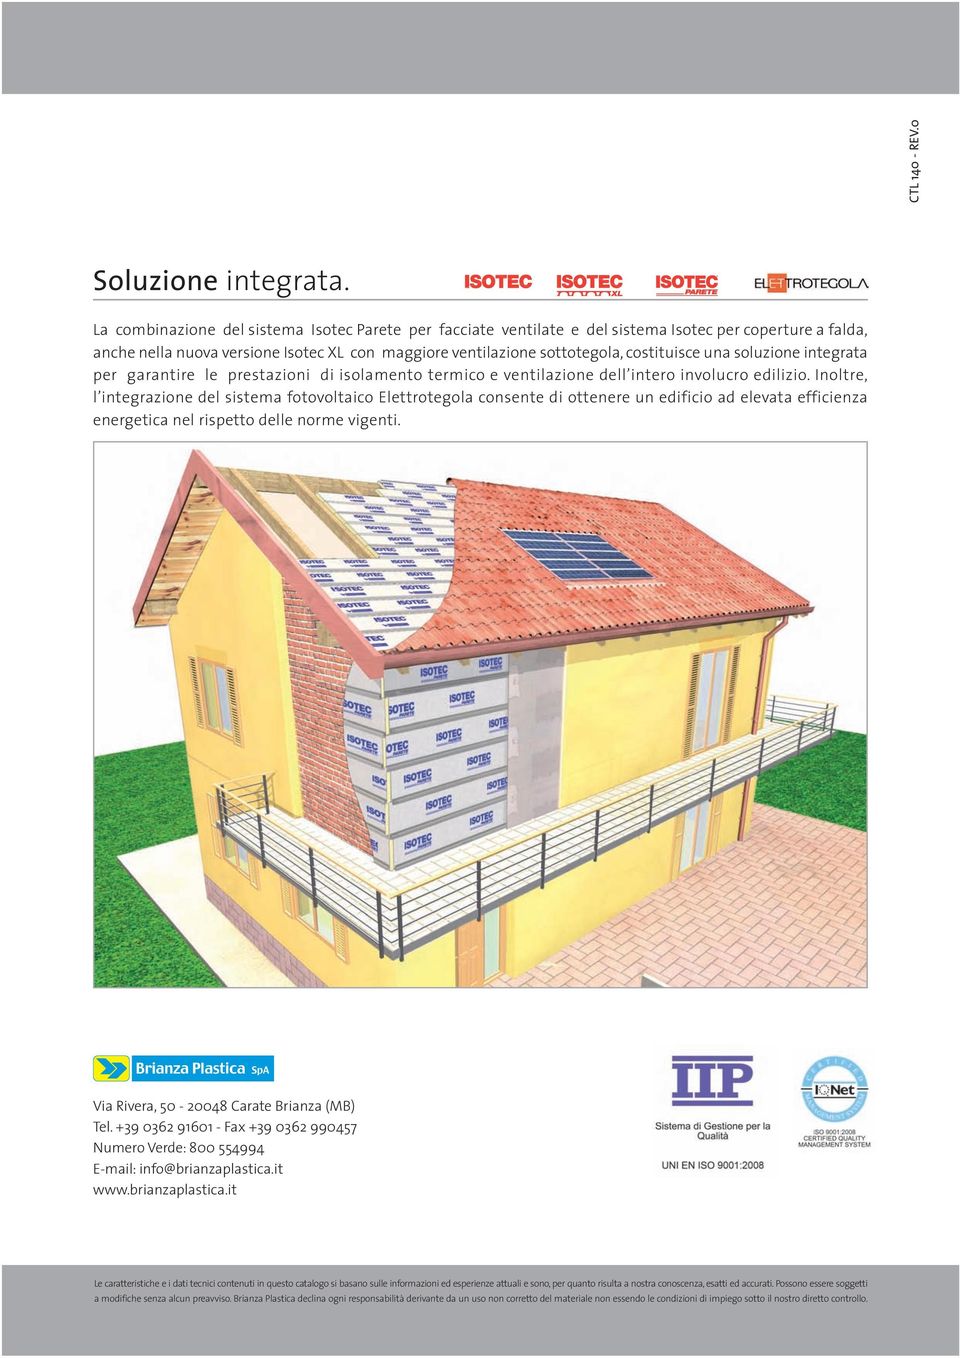 una soluzione integrata per garantire le prestazioni di isolamento termico e ventilazione dell intero involucro edilizio.